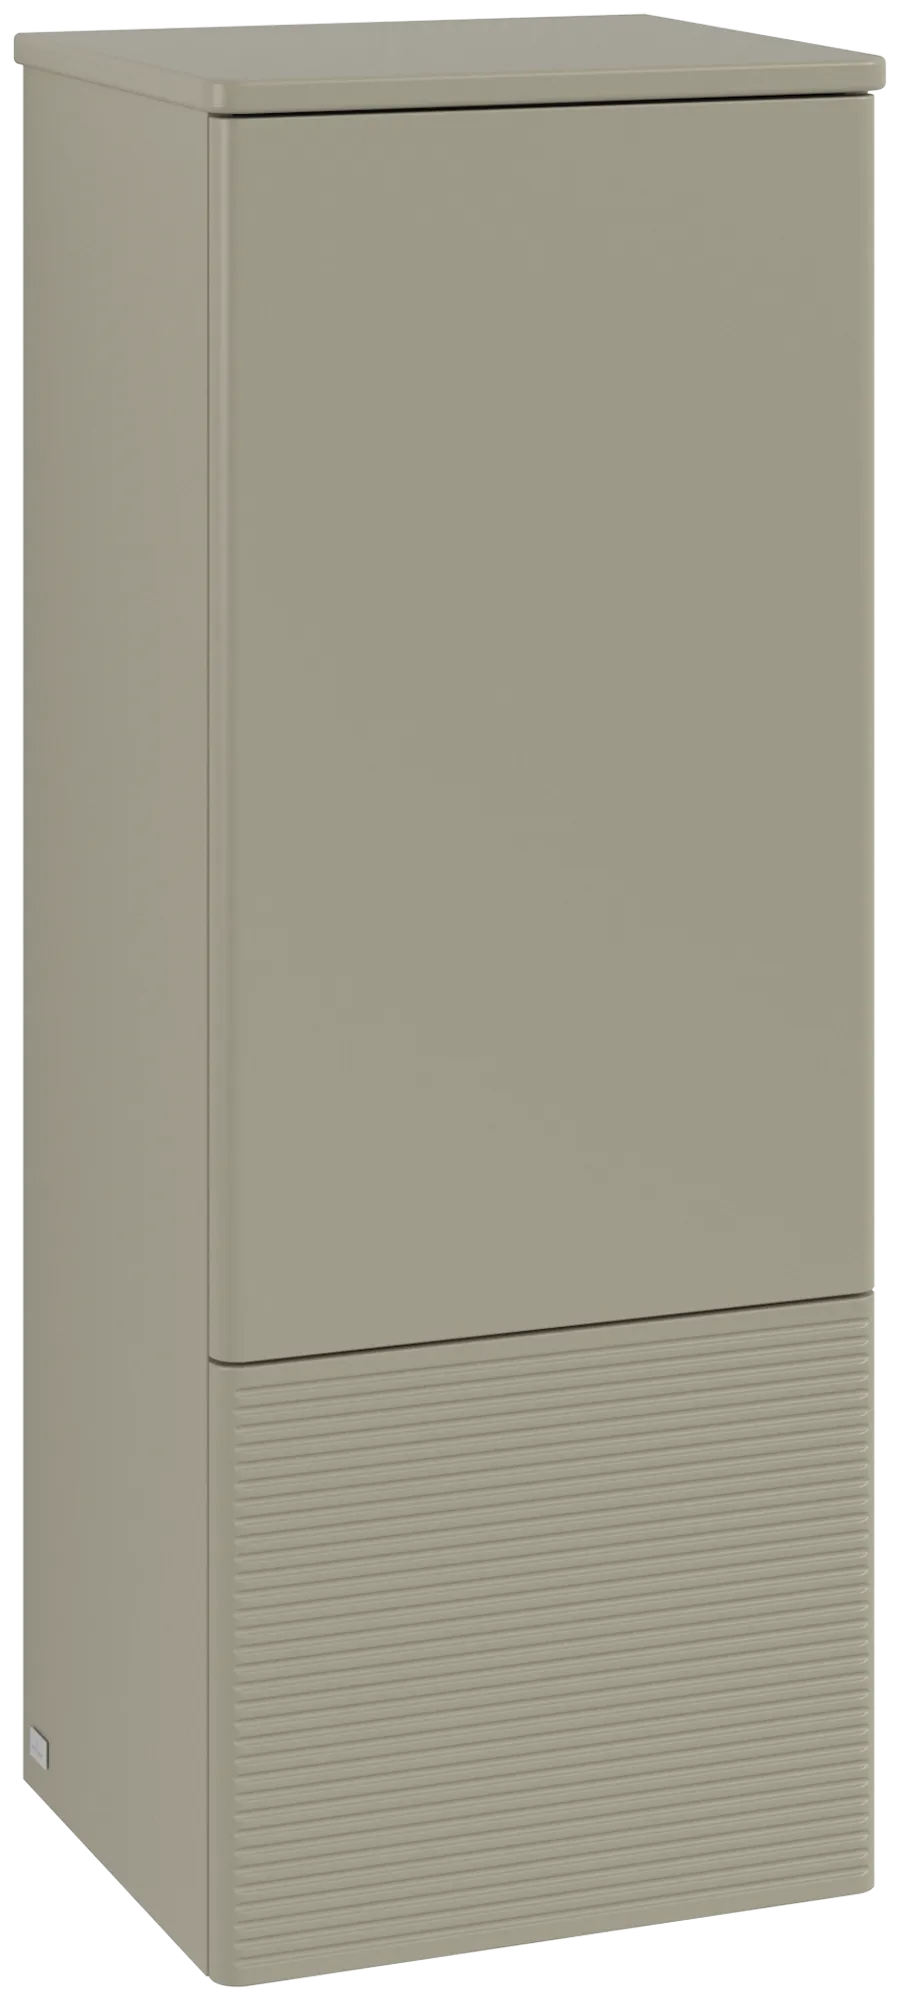 Picture of VILLEROY BOCH Antao Medium-height cabinet, 1 door, 414 x 1039 x 356 mm, Front with grain texture, Stone Grey Matt Lacquer / Stone Grey Matt Lacquer #K44100HK